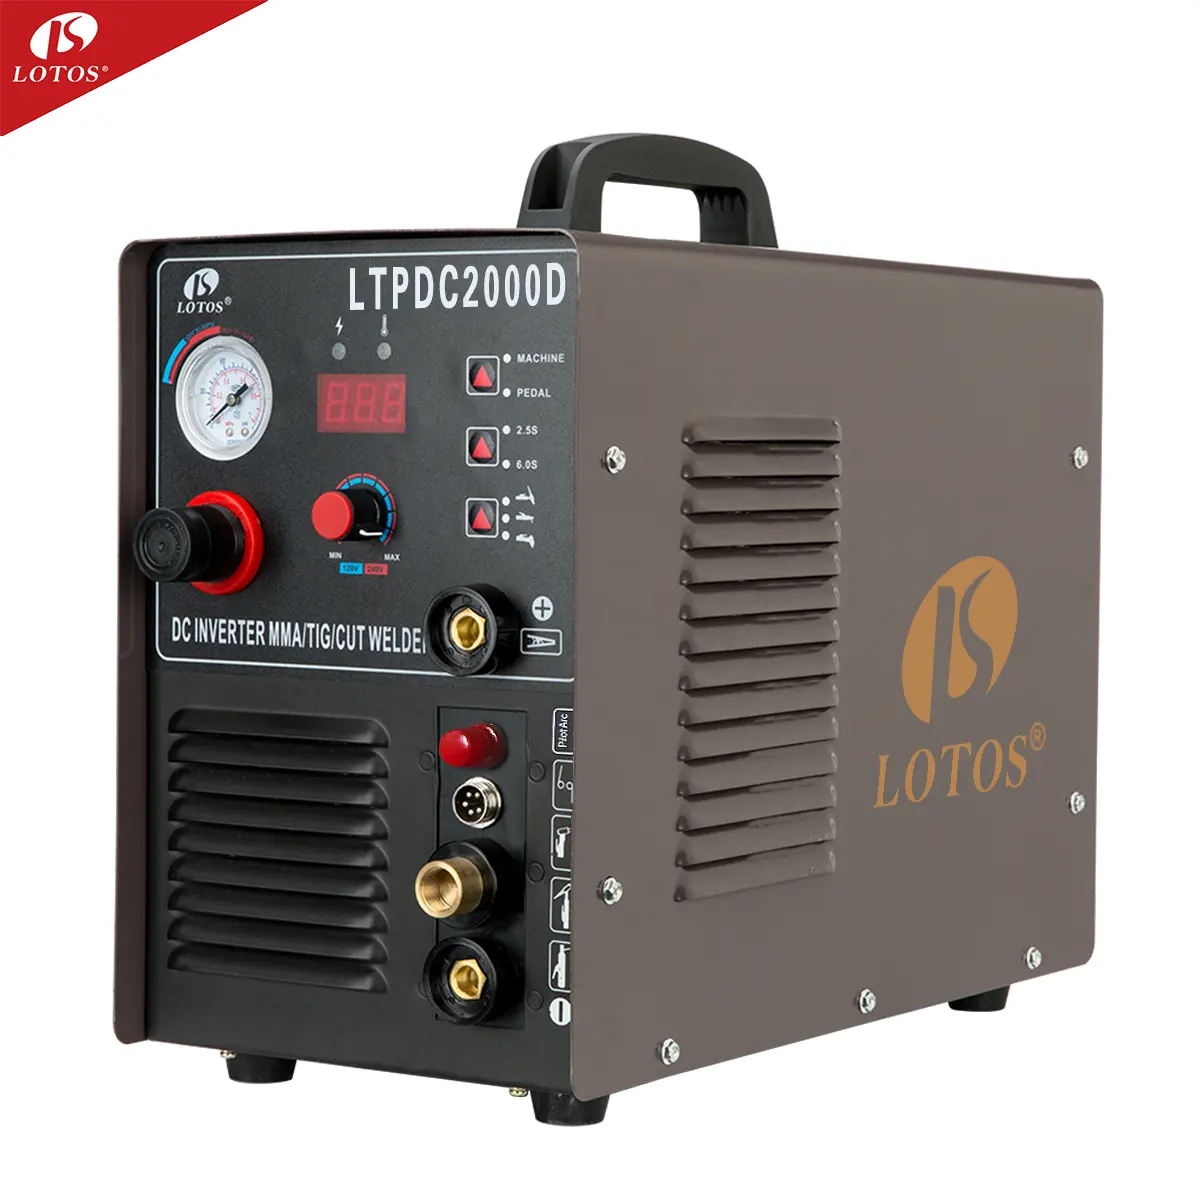 Lotos LTPDC2000D kaynakçı invertör 200a kesim MMA TIG 3 in1 inverter kaynak makinası fiyat satılık